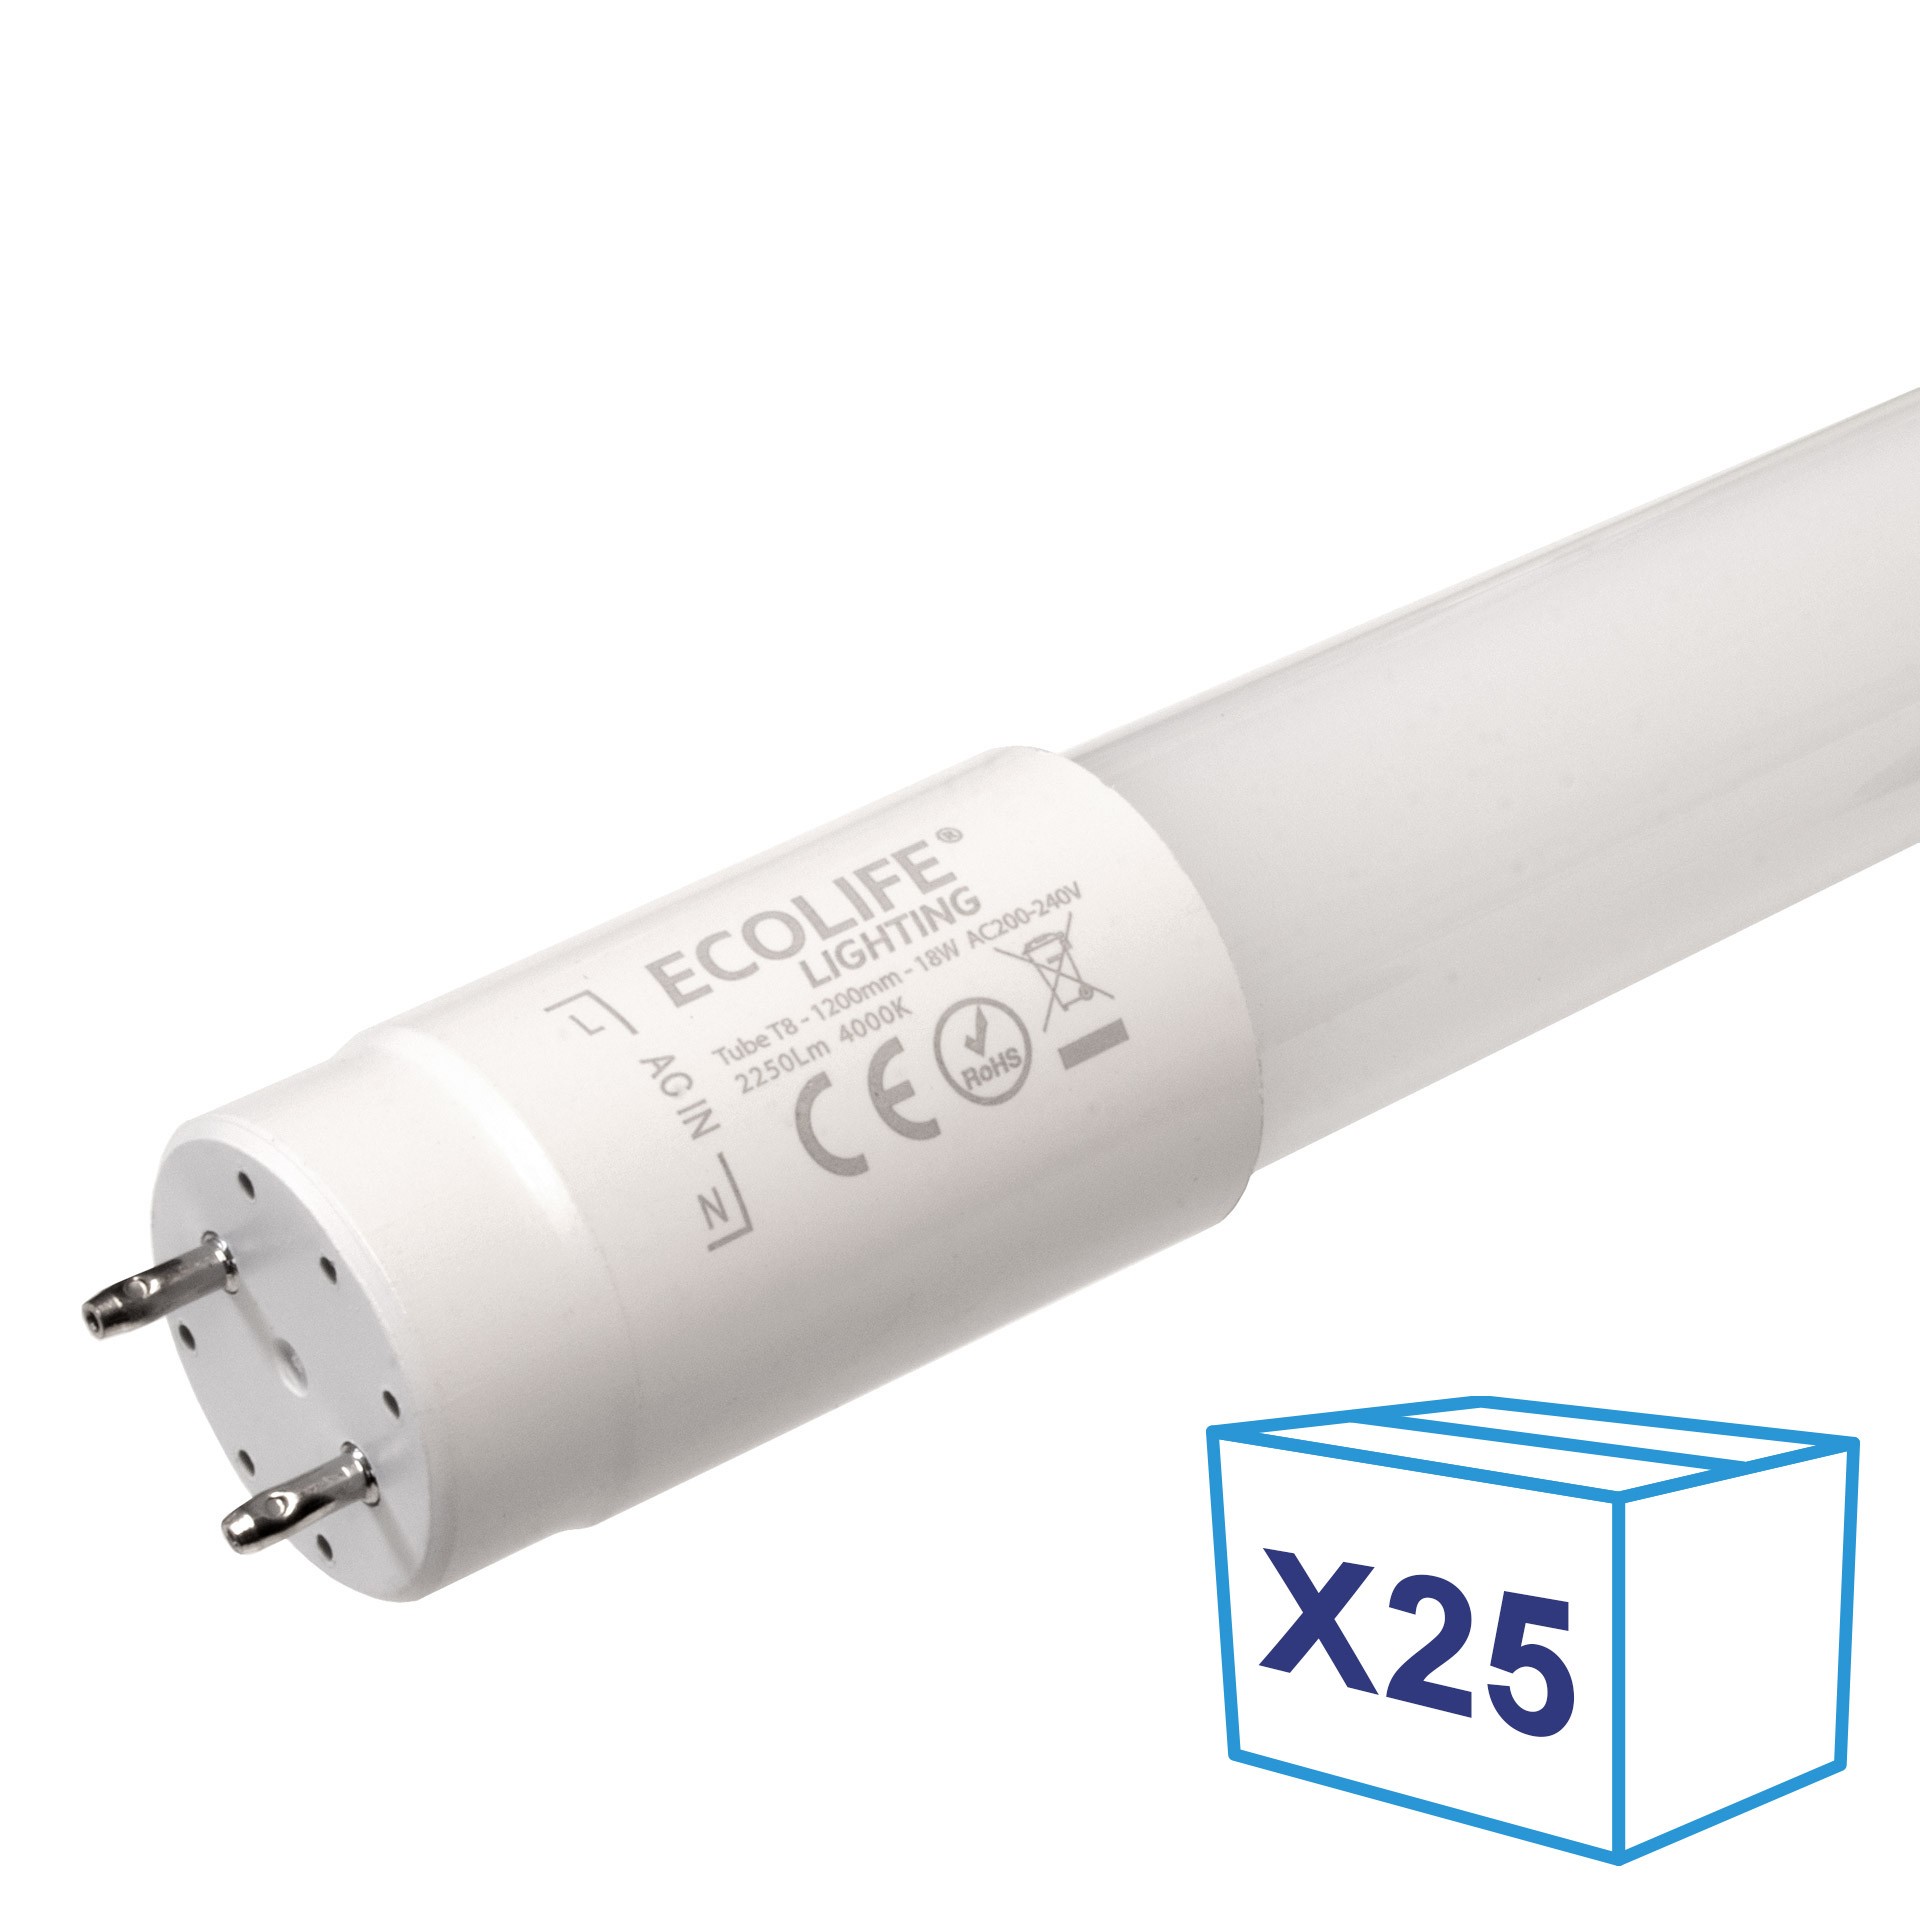 Réglette Slim pour tube LED T8 simple - Non étanche - 900 mm - DeliTech® -  Decoreno